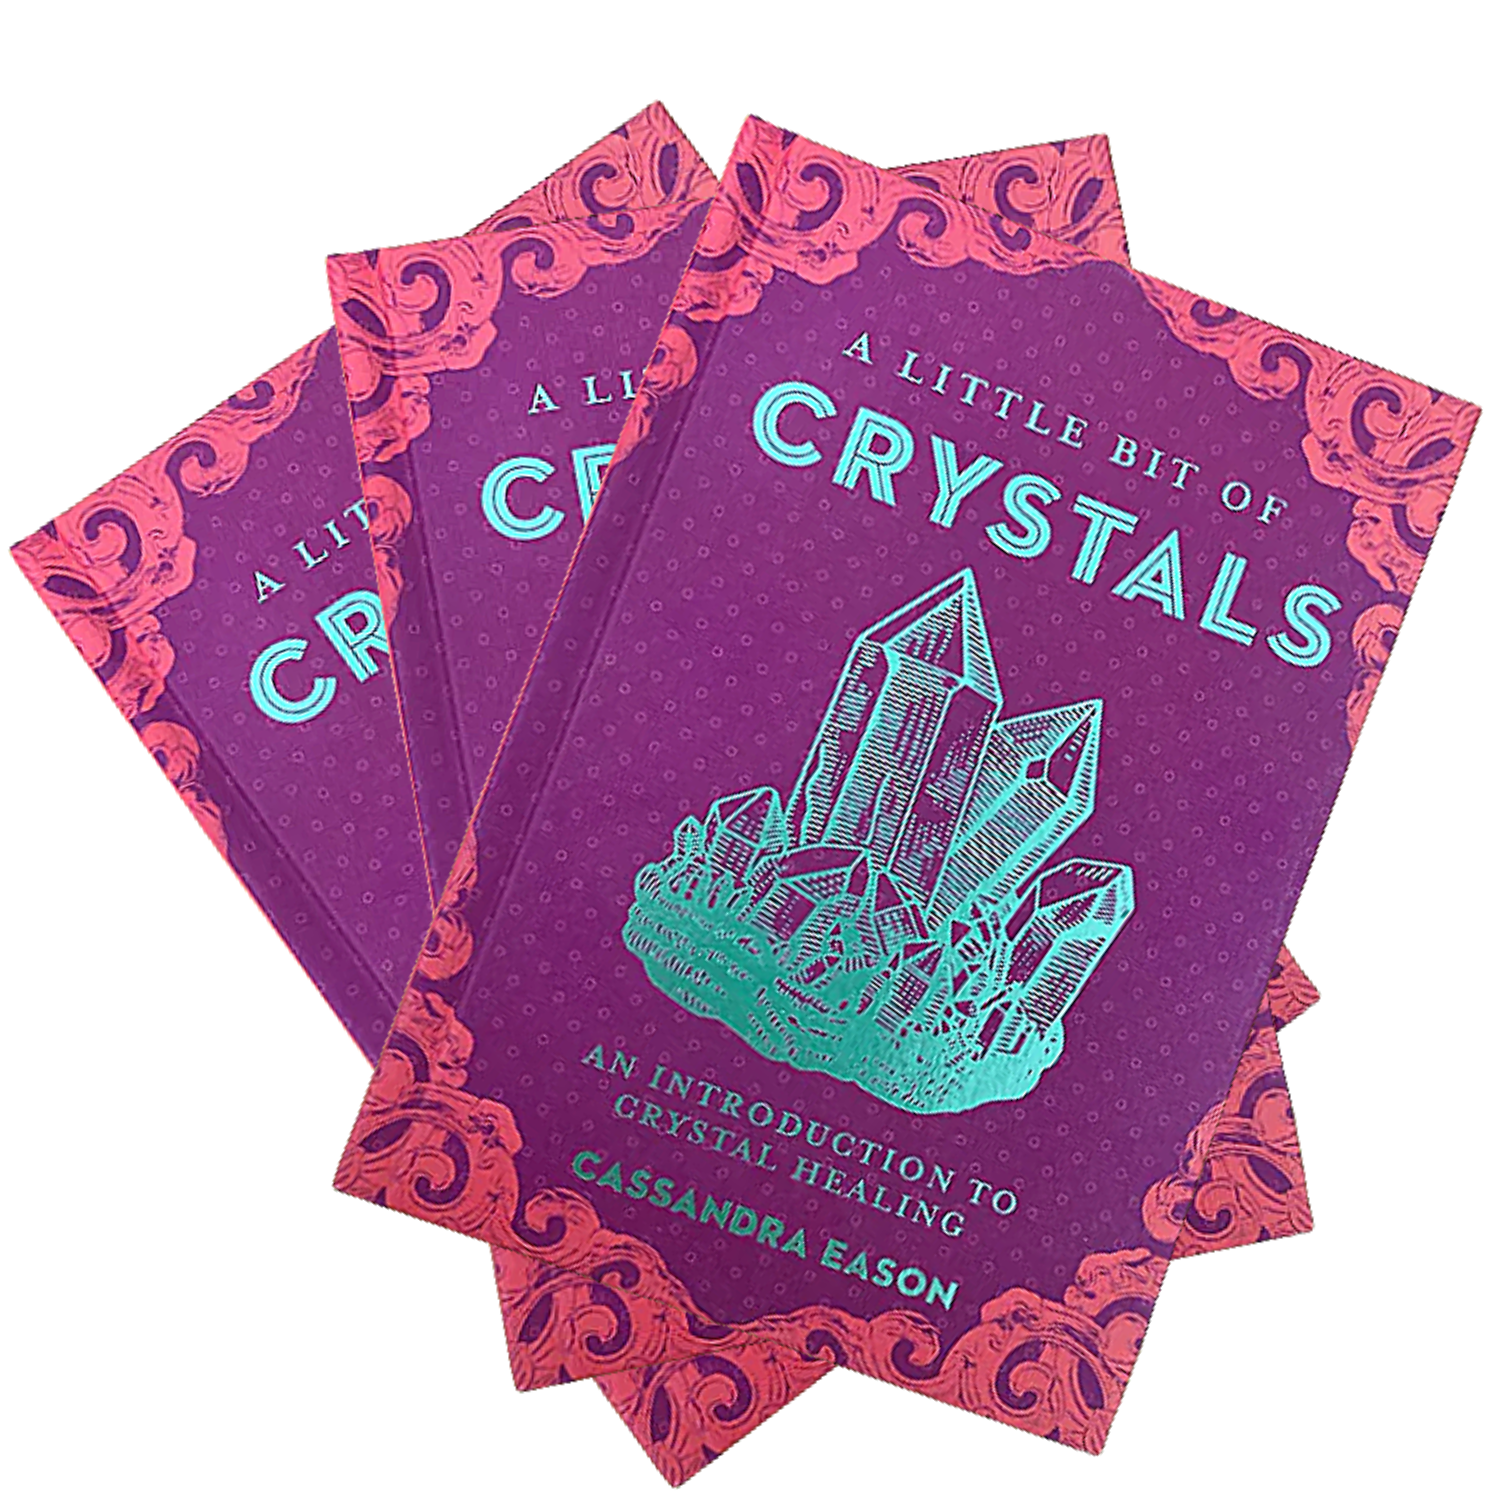 A little bit of Crystal - Cassandra Eason